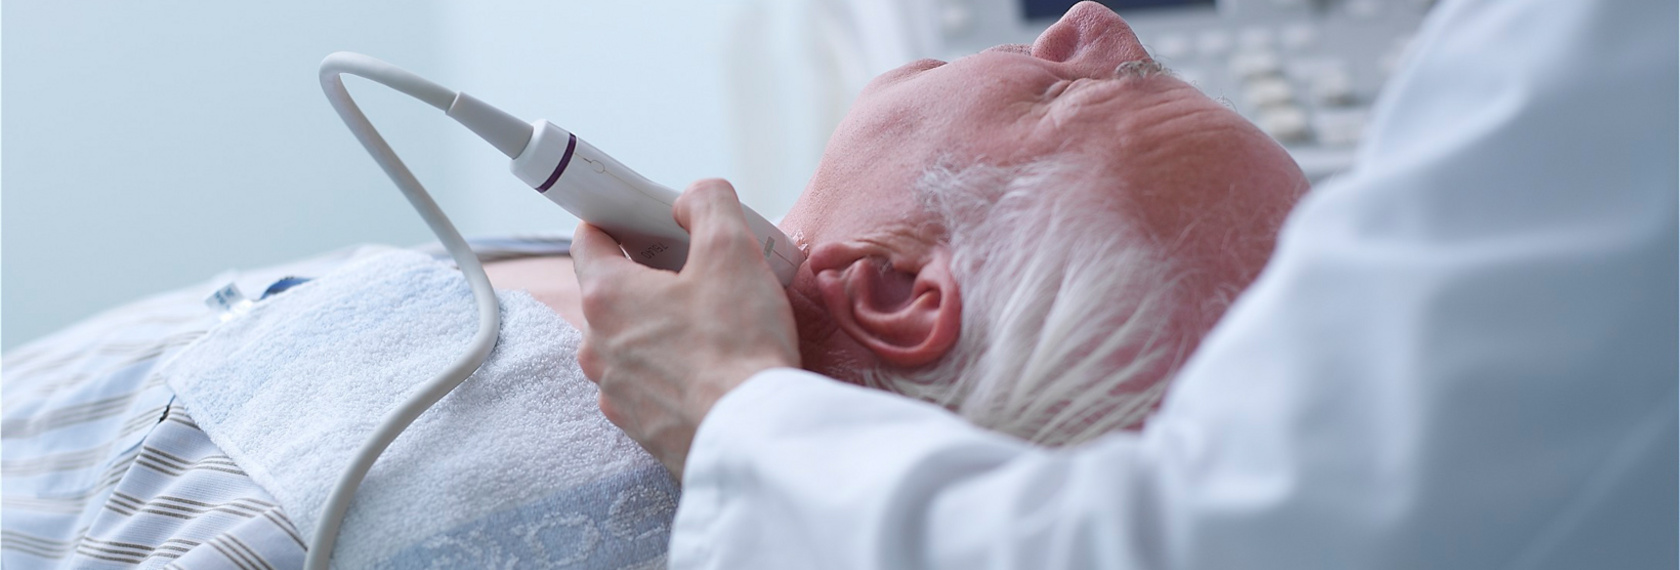 Arzt führt eine Untersuchung mittels Ultraschall an der Halsschlagader durch